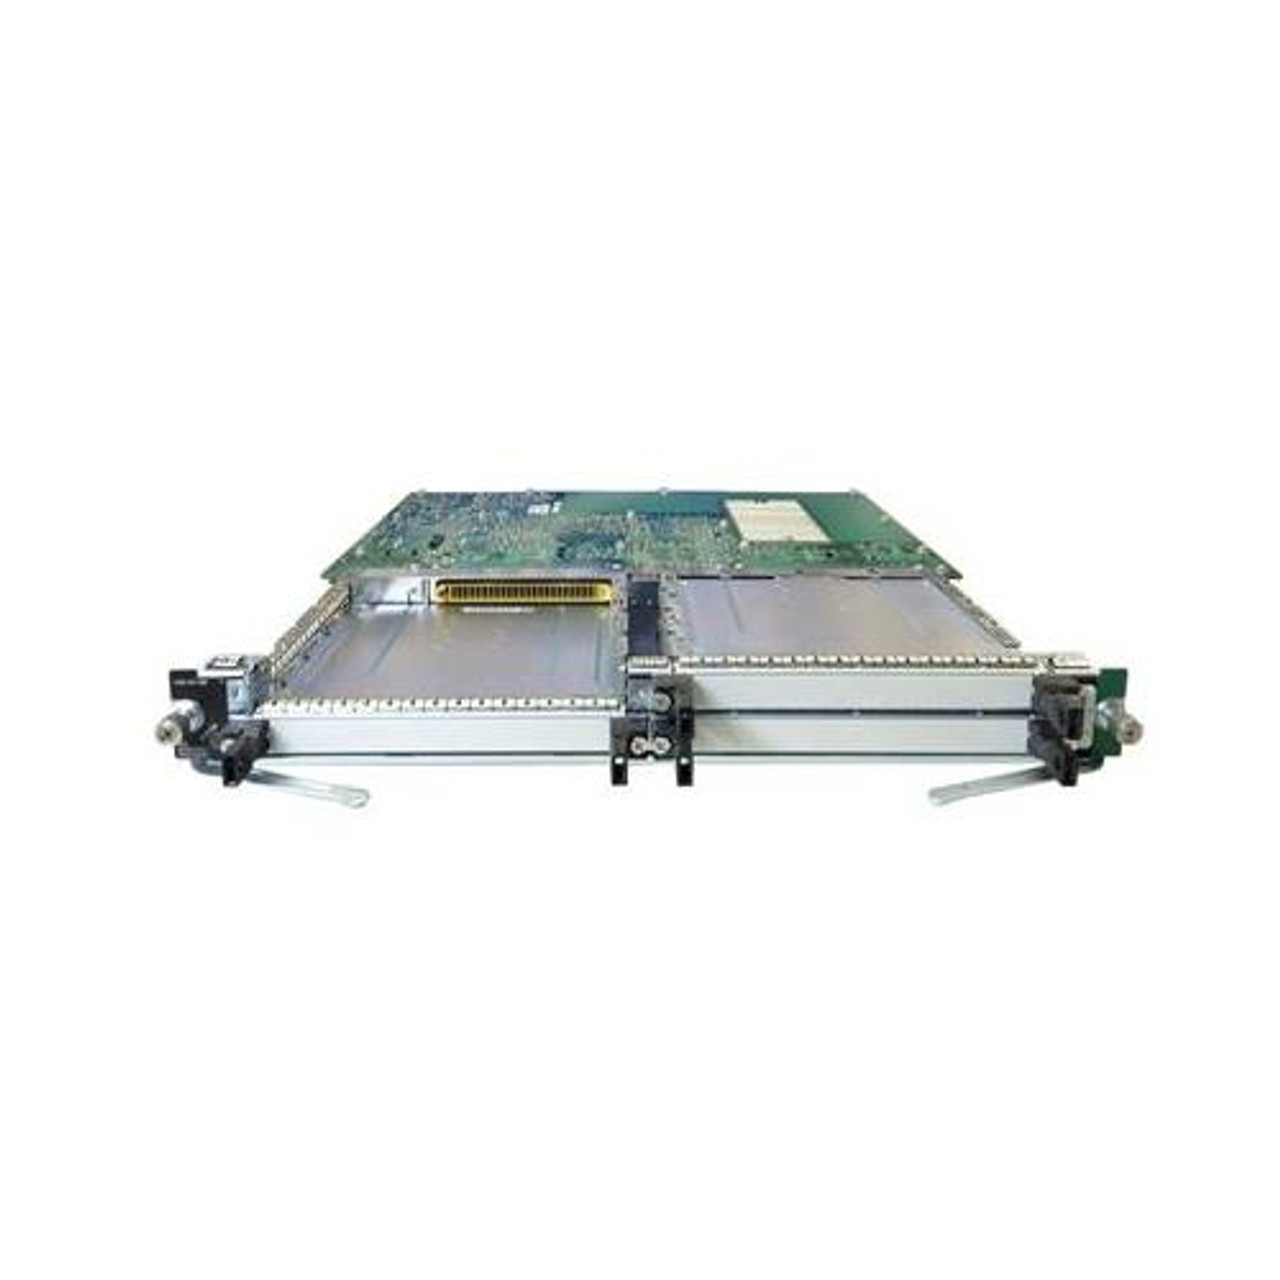 15454-OC121LR1550 Cisco OC12 LR 1550 1 Ckt SC Card For Cerent 15454 Series (Refurbished)